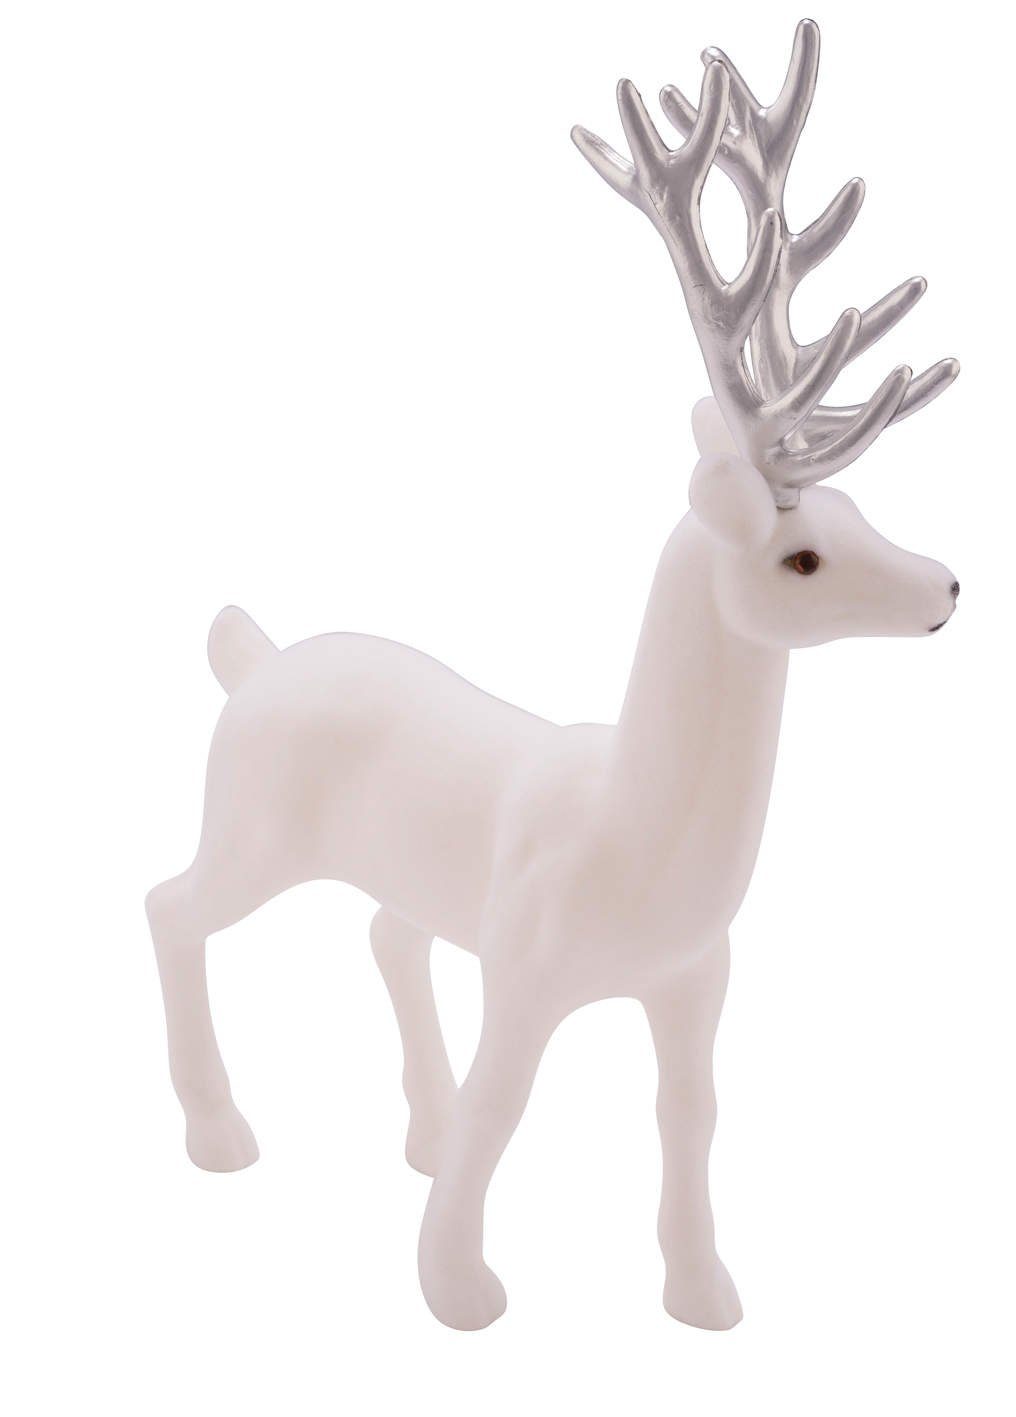 Gehlmann Weihnachtsfigur Hirsch, Samt, verschiedene Farben und Größen erhältlich weiß-silber | Dekofiguren